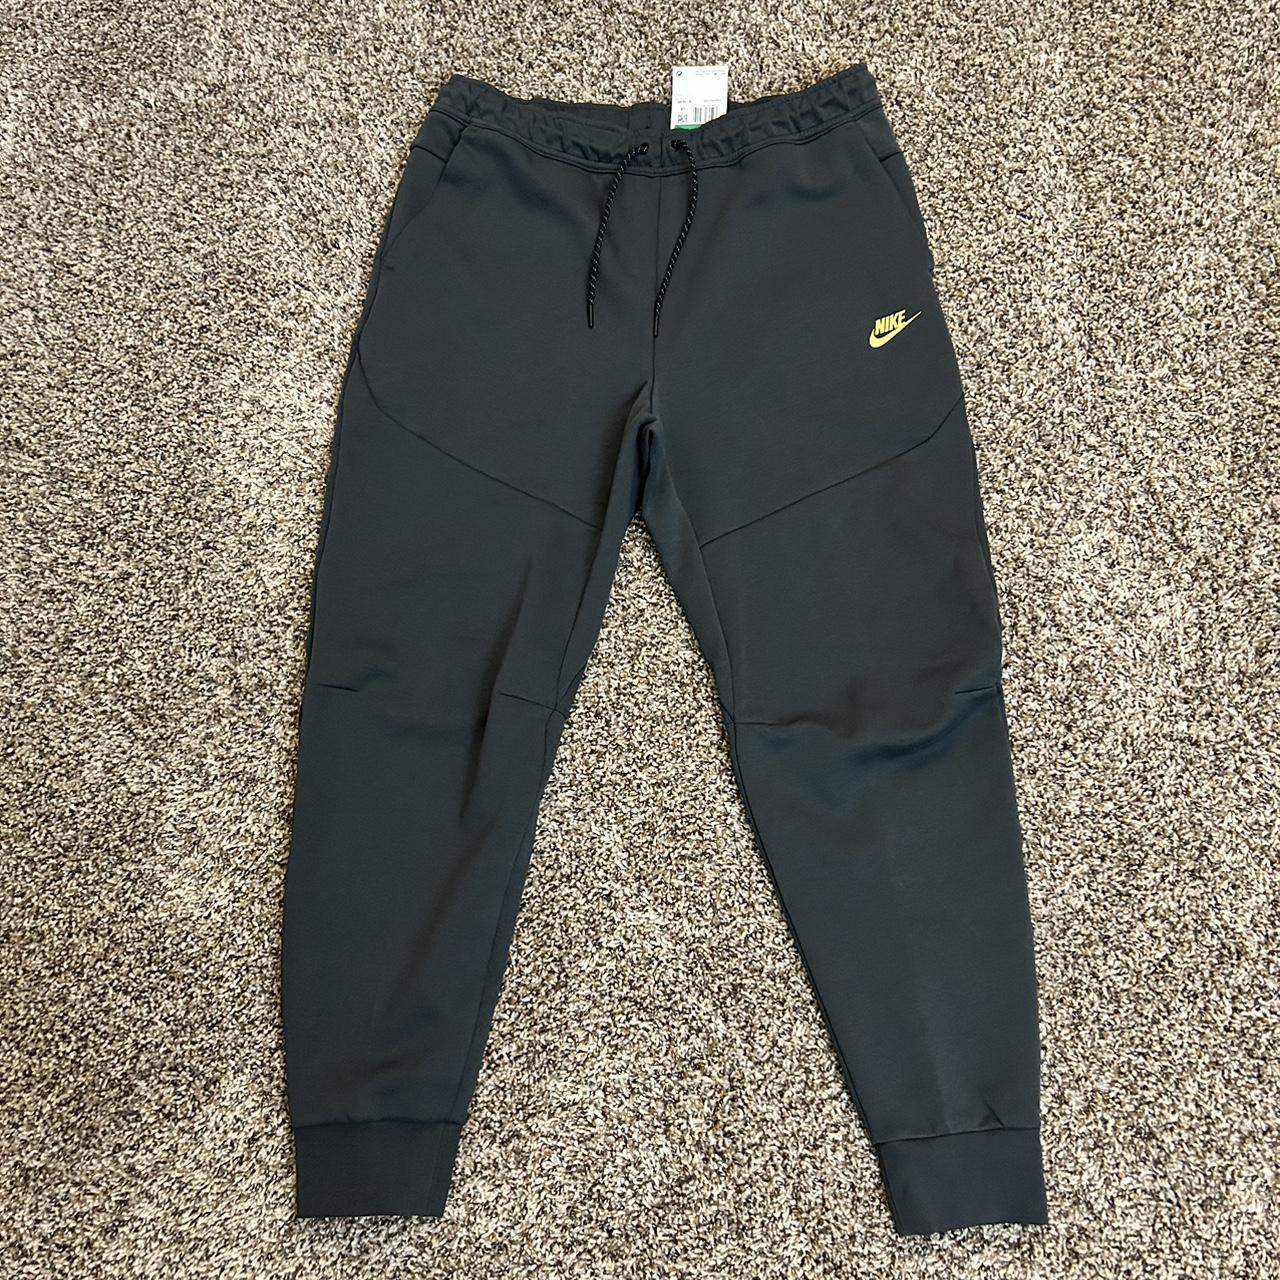 Nike Tech Fleece Dark Grey Jogger Pants In A Size... - Depop